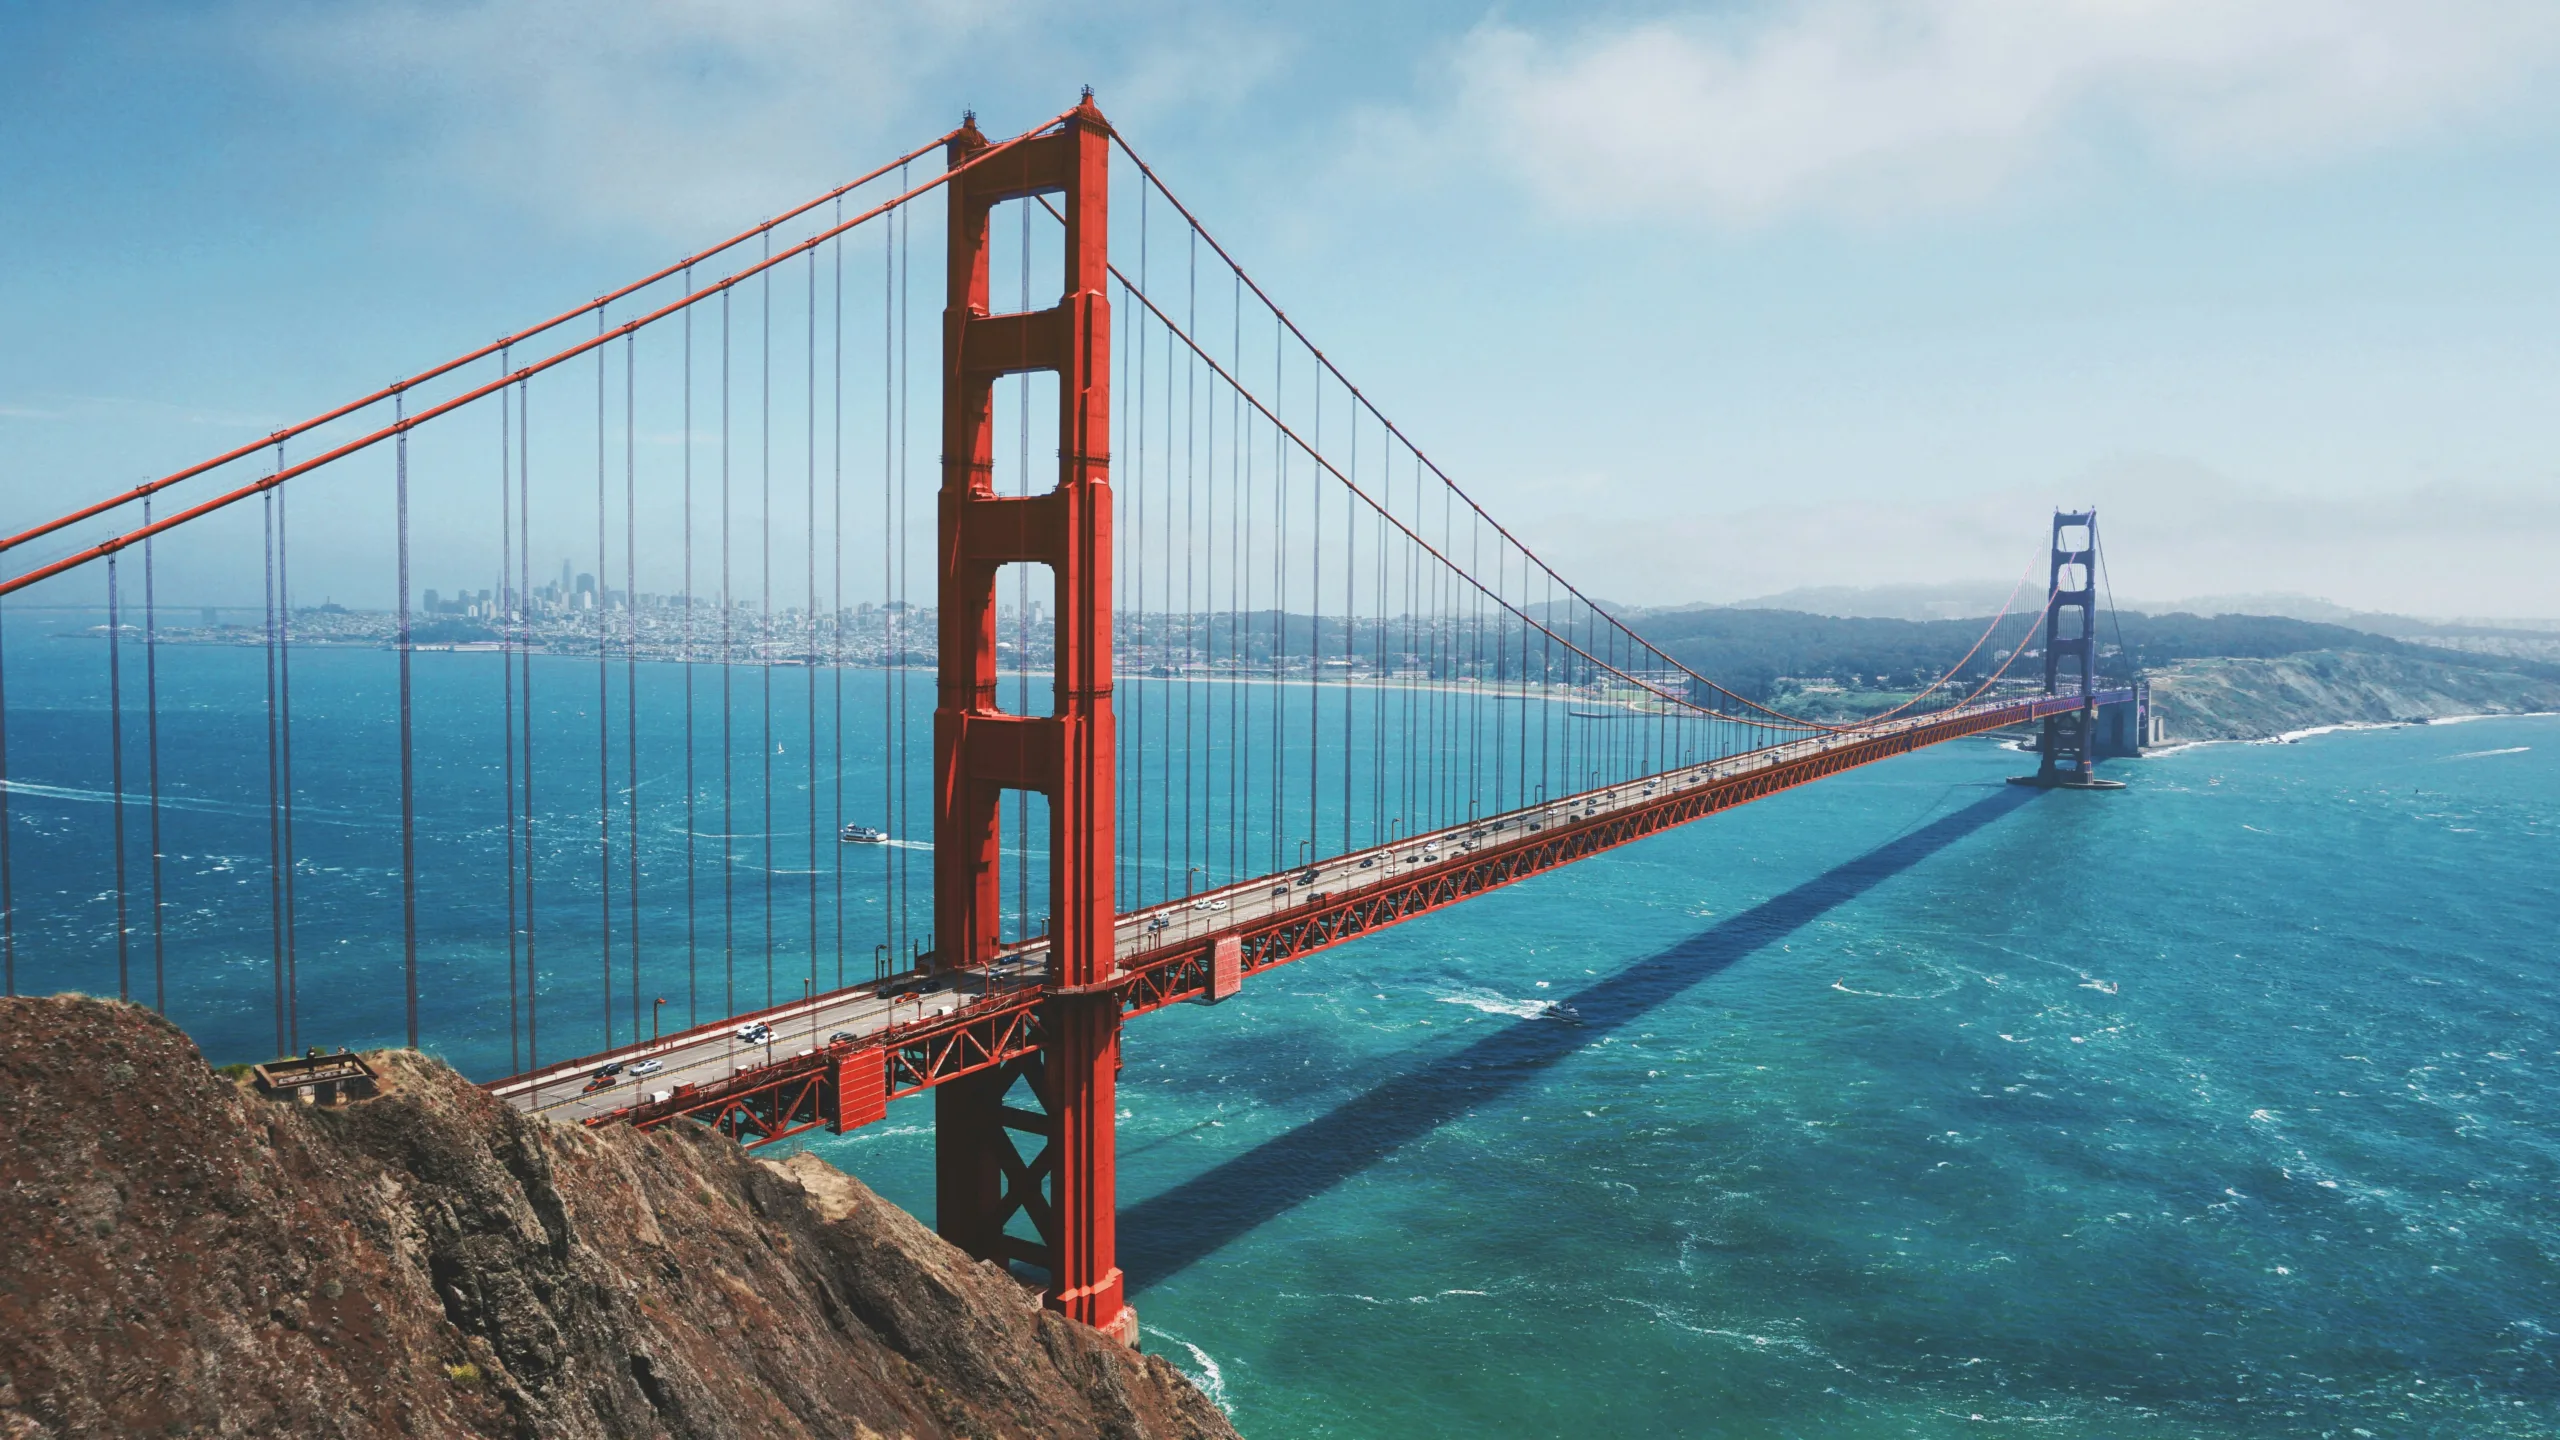 California_San Francisco_Golden Gate Bridge_maarten-van-den-heuvel-gZXx8lKAb7Y-unsplash-min